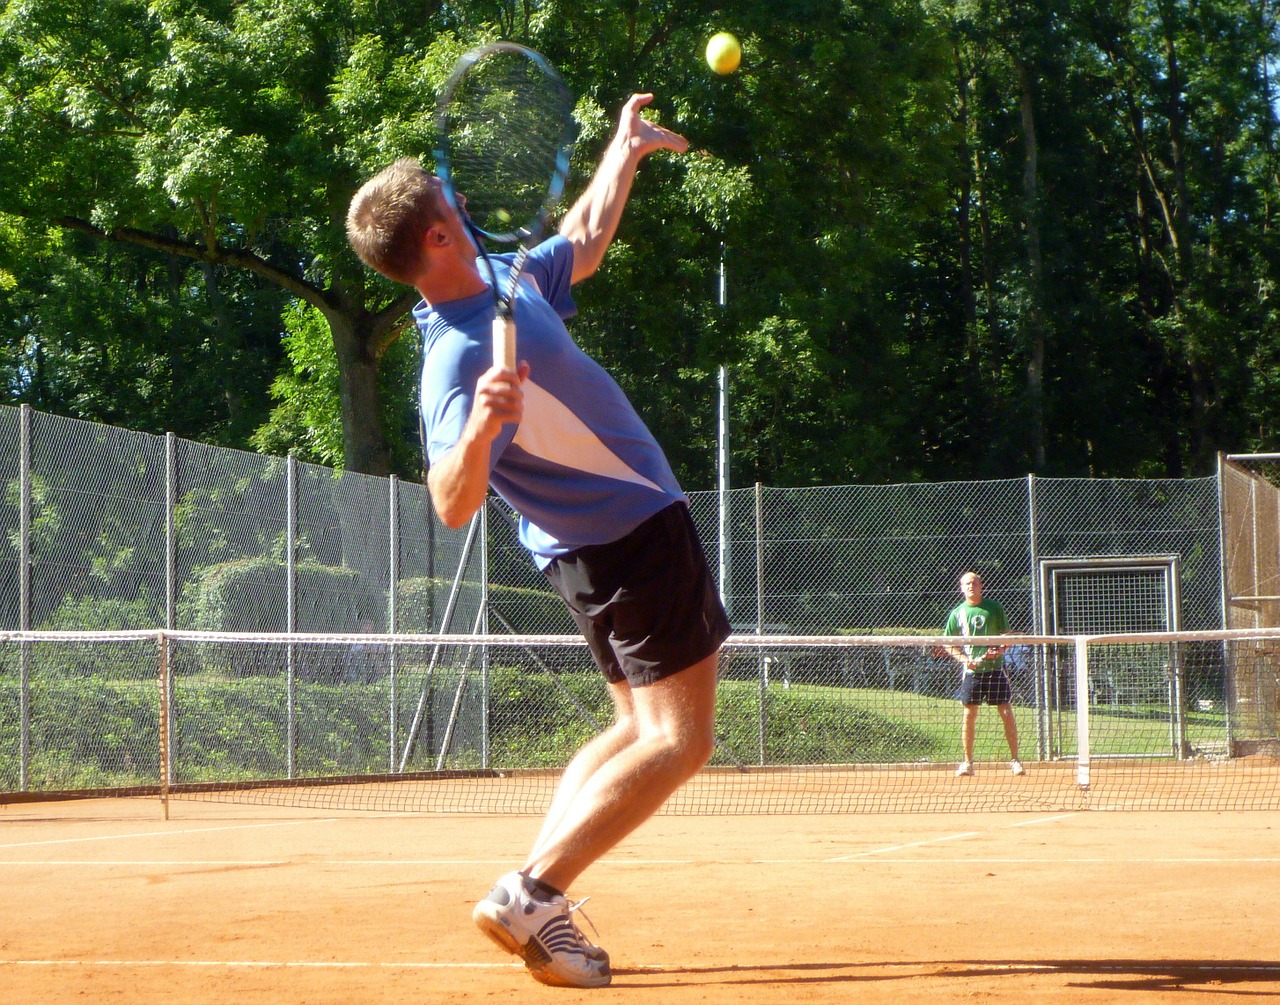 Un jugador de tenis a punto de realizar un saque, realiza un movimiento en eñl que fuerza la muñeca izquierda